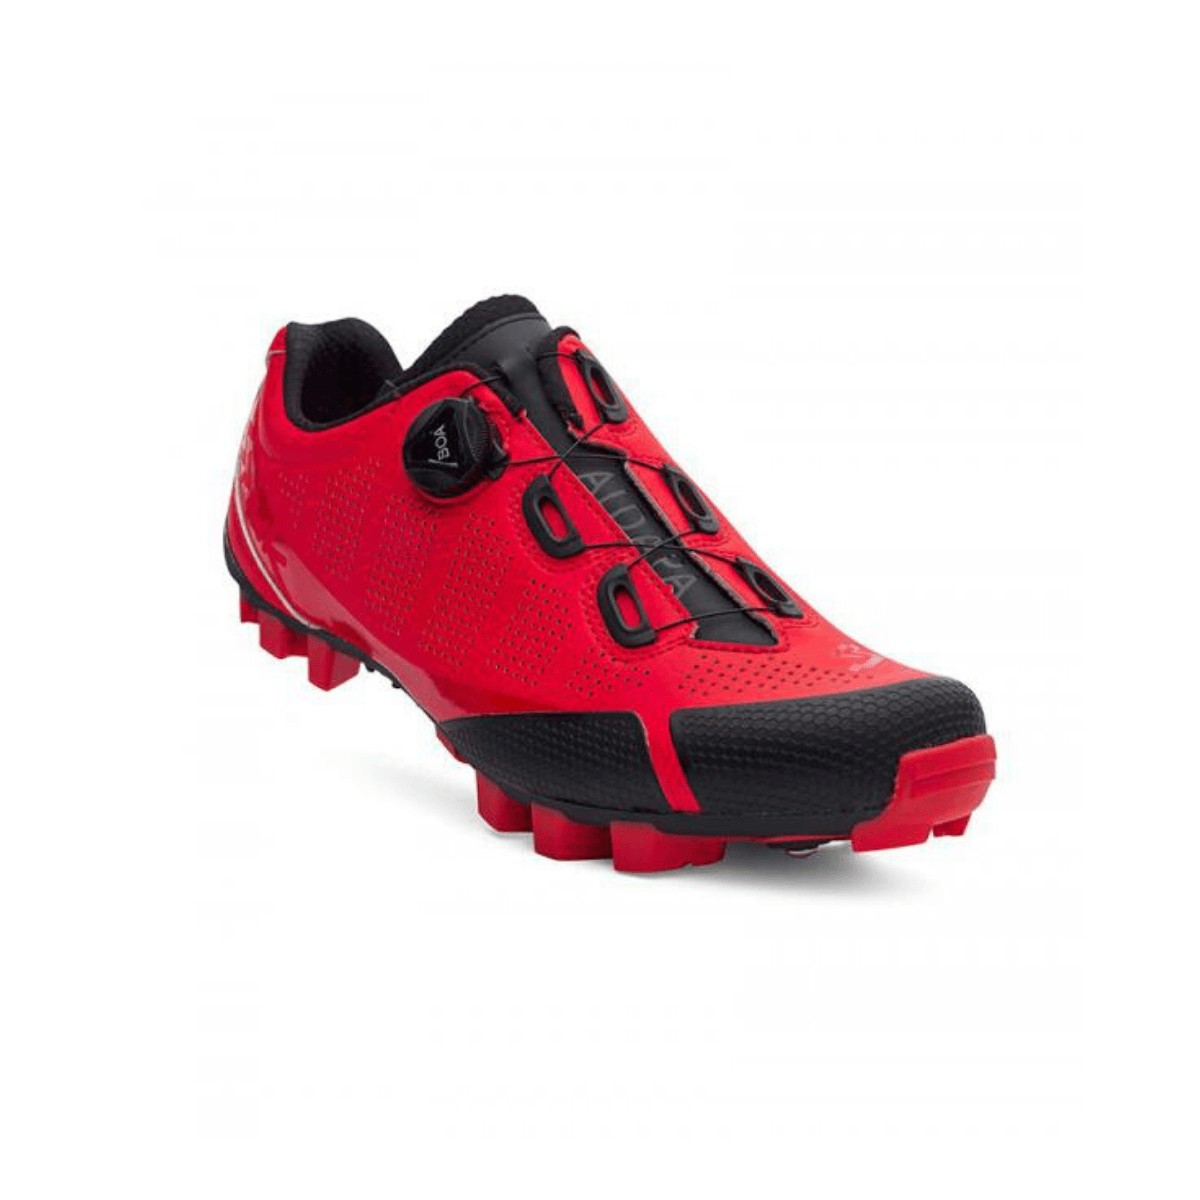 Spiuk Aldapa MTB Matte Red Shoes, Size 41 - EUR